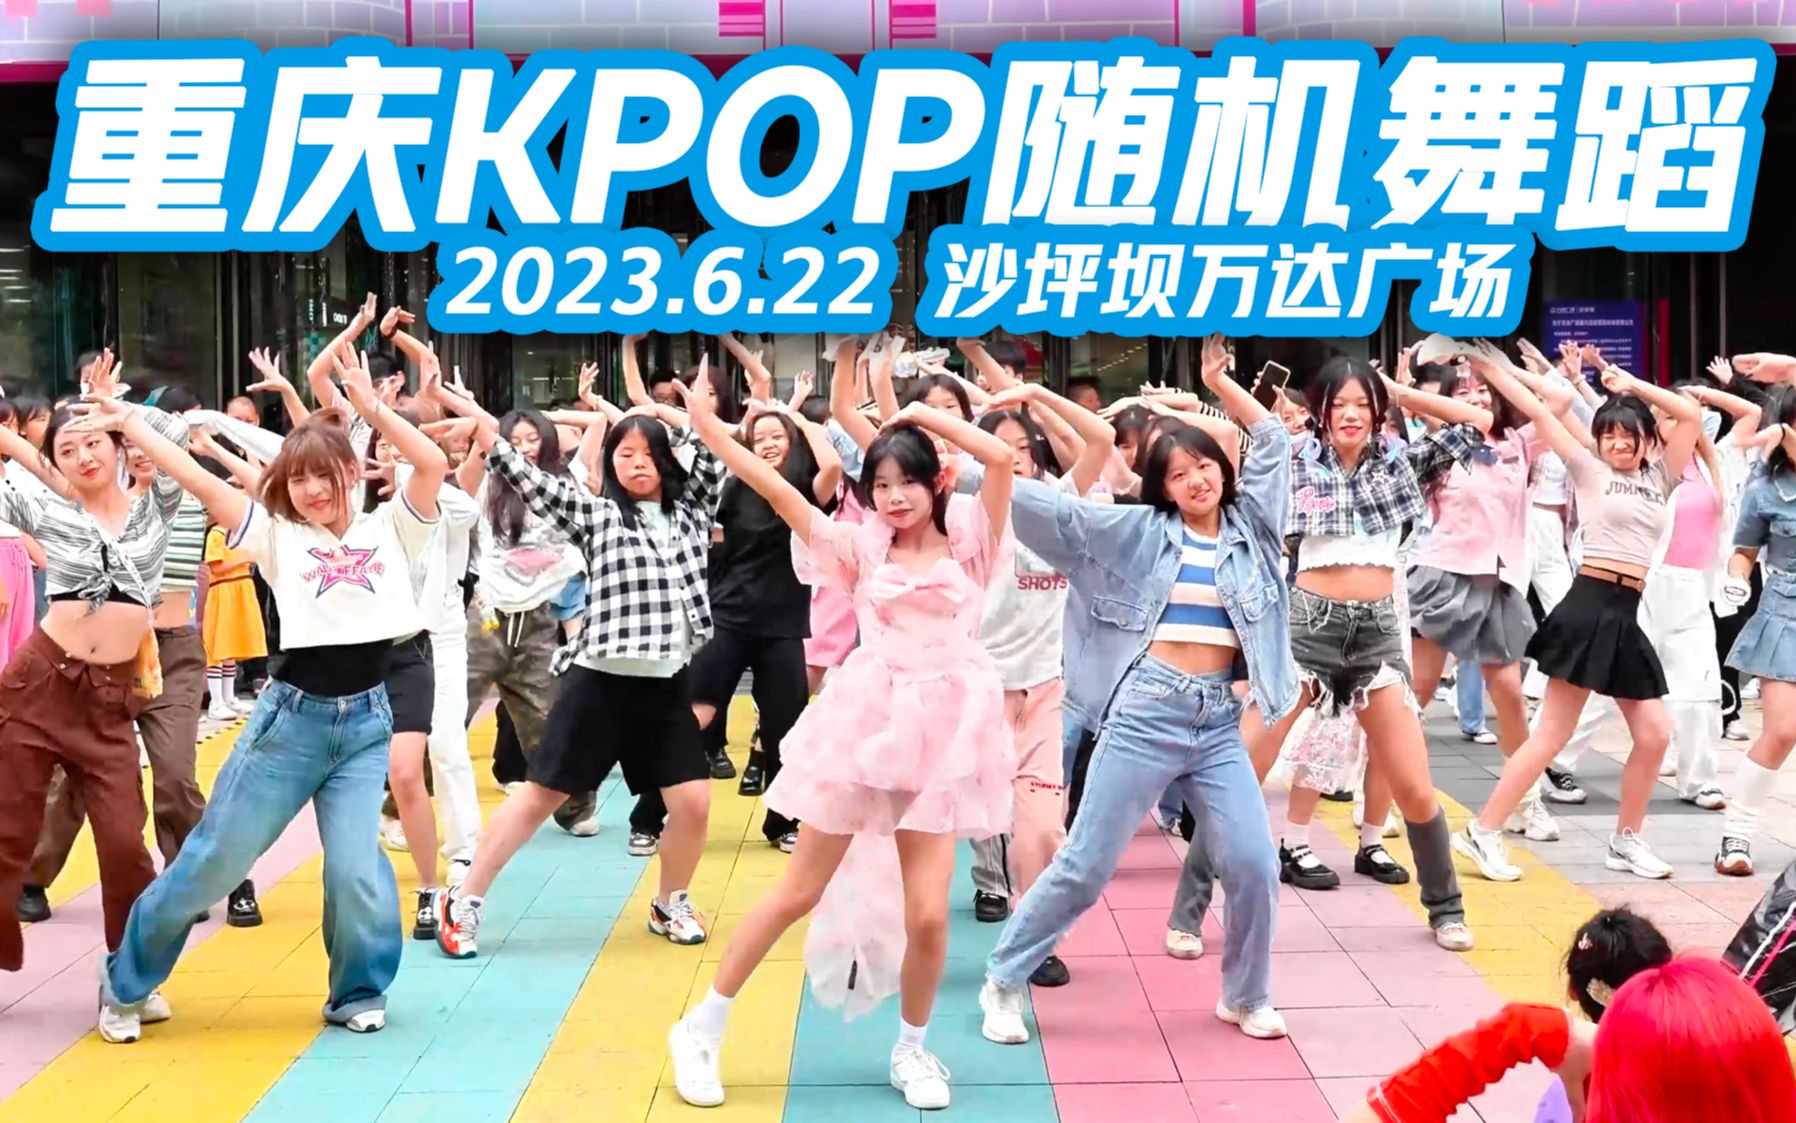 【来嗨|山城】快来感受夏日kpop人的热情！| KPOP随机舞蹈合集 2023.6.22